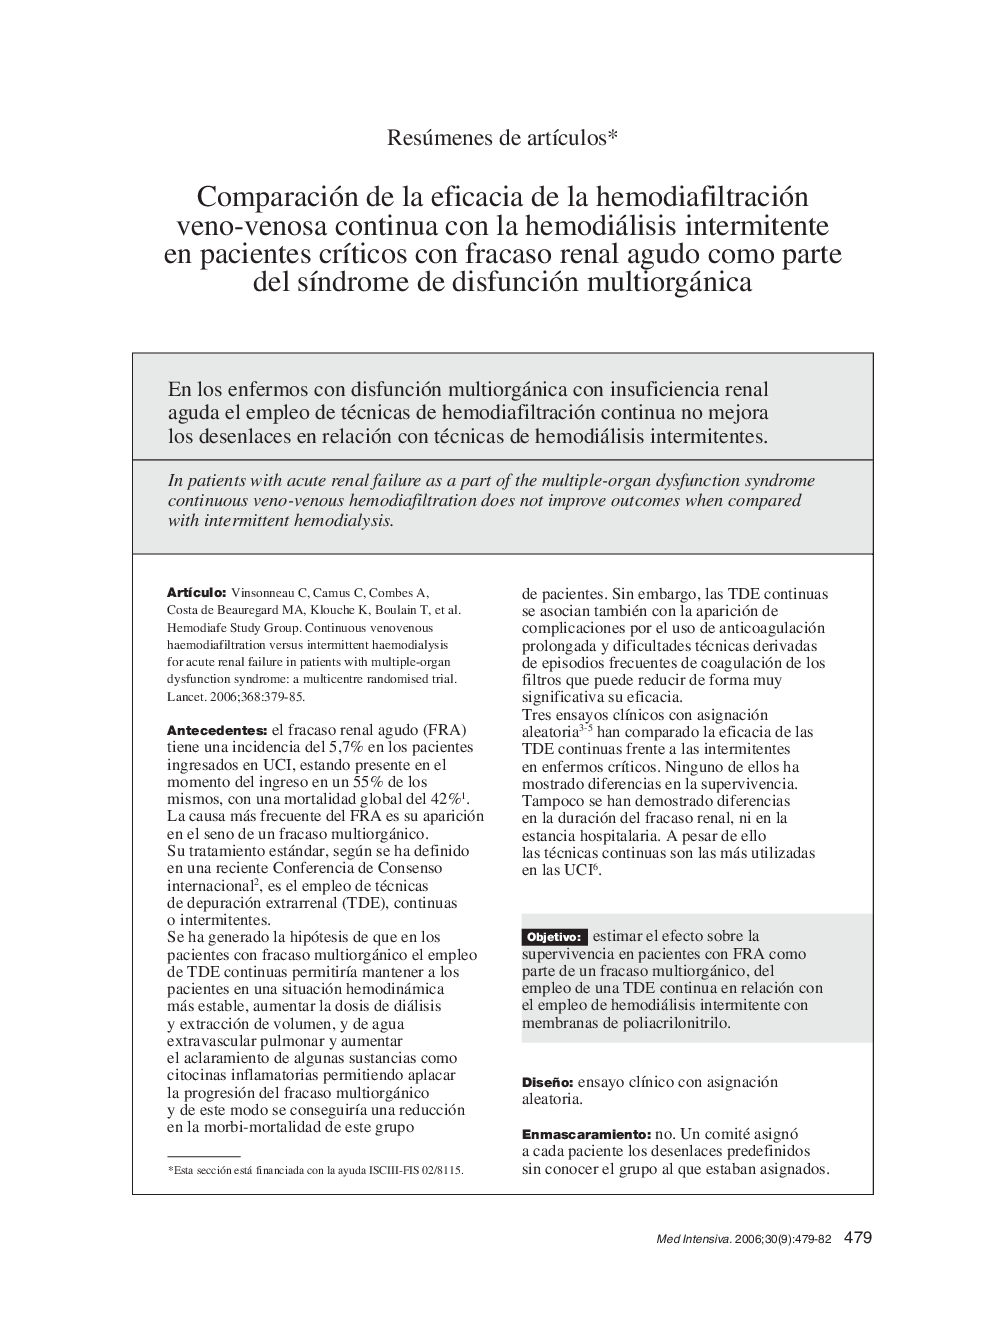 Comparación de la eficacia de la hemodiafiltración veno-venosa continua con la hemodiálisis intermitente en pacientes crÃ­ticos con fracaso renal agudo como parte del sÃ­ndrome de disfunción multiorgánica